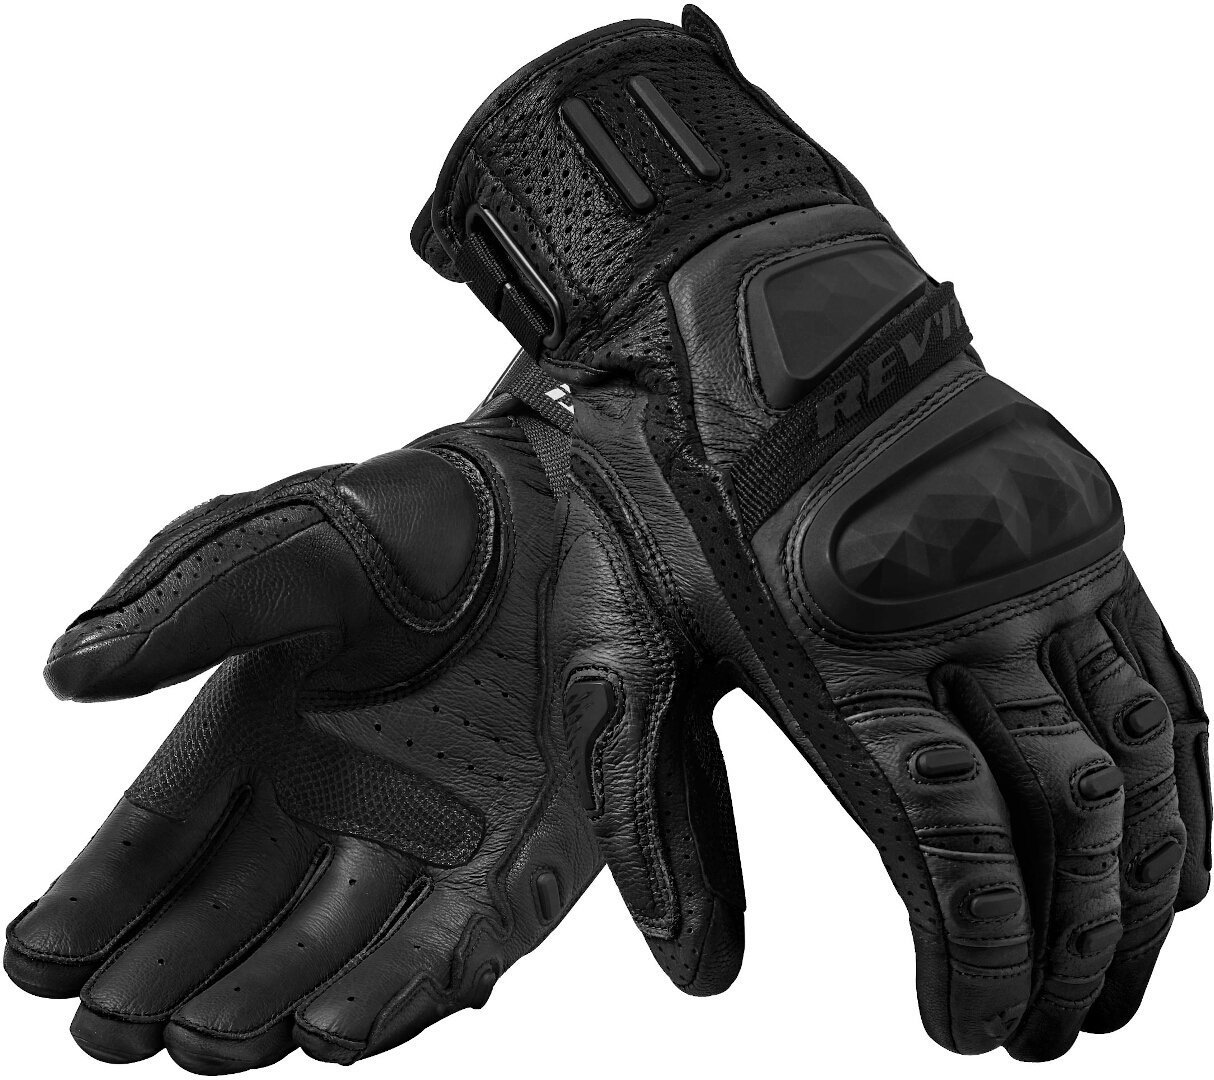 Revit Cayenne 2 Motorrad Handschuhe, schwarz, Größe 3XL, schwarz, Größe 3XL